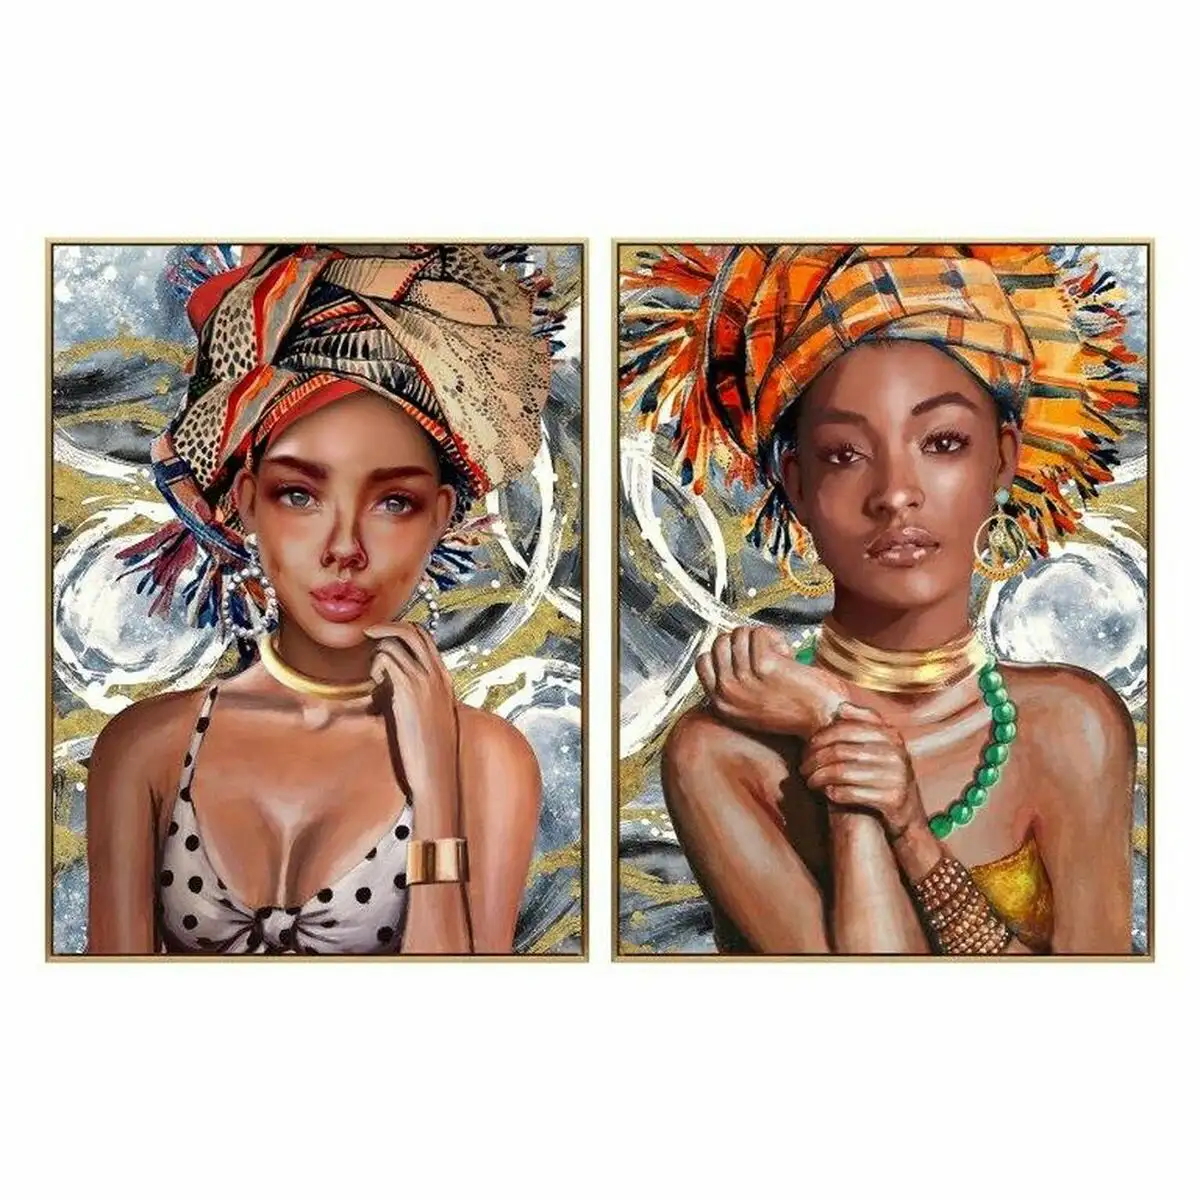 Peinture dkd home decor 63 x 3 5 x 93 cm femme africaine coloniale 2 unite s_7203. DIAYTAR SENEGAL - L'Art de Choisir, l'Art de Se Distinquer. Naviguez à travers notre catalogue et choisissez des produits qui ajoutent une note d'élégance à votre style unique.